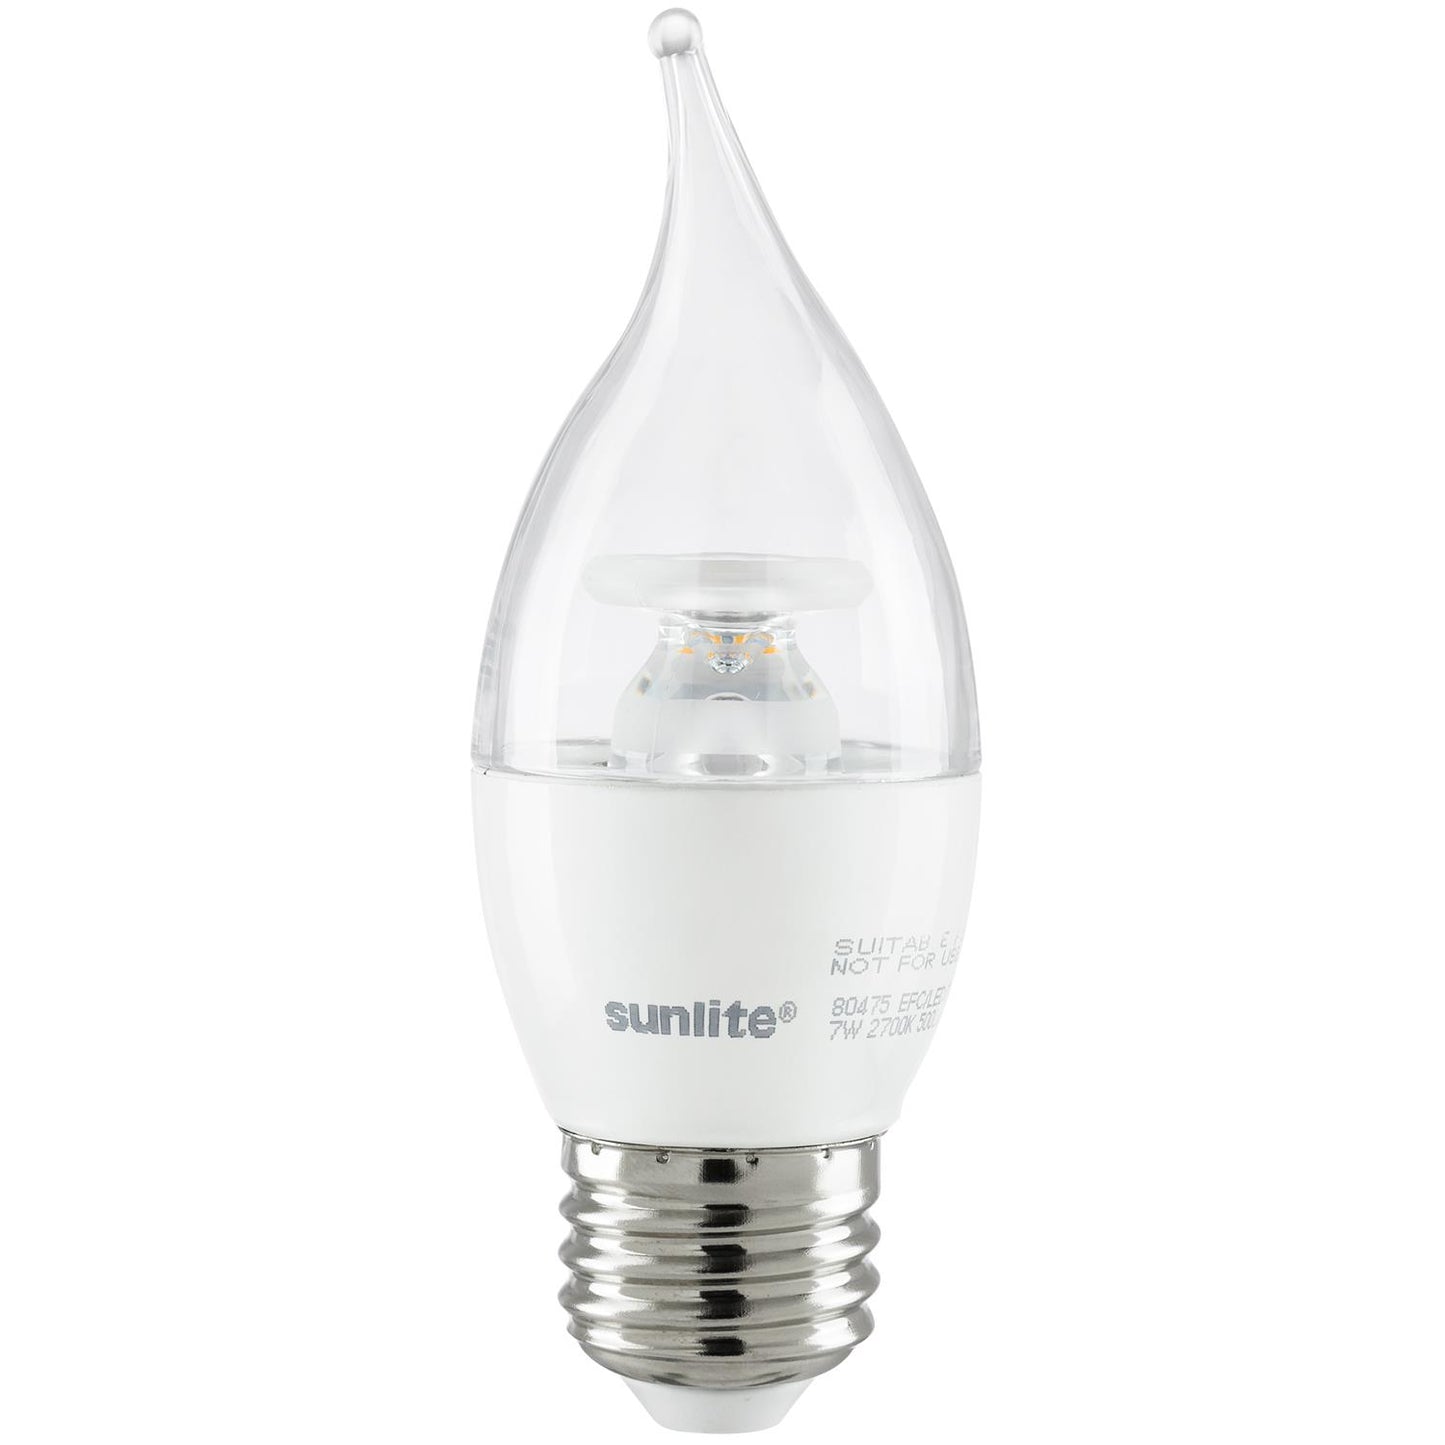 Sunlite LED Flame Tip Chandelier 7W (60W Equivalent) Light Bulb Medium (E26) Base, Warm White